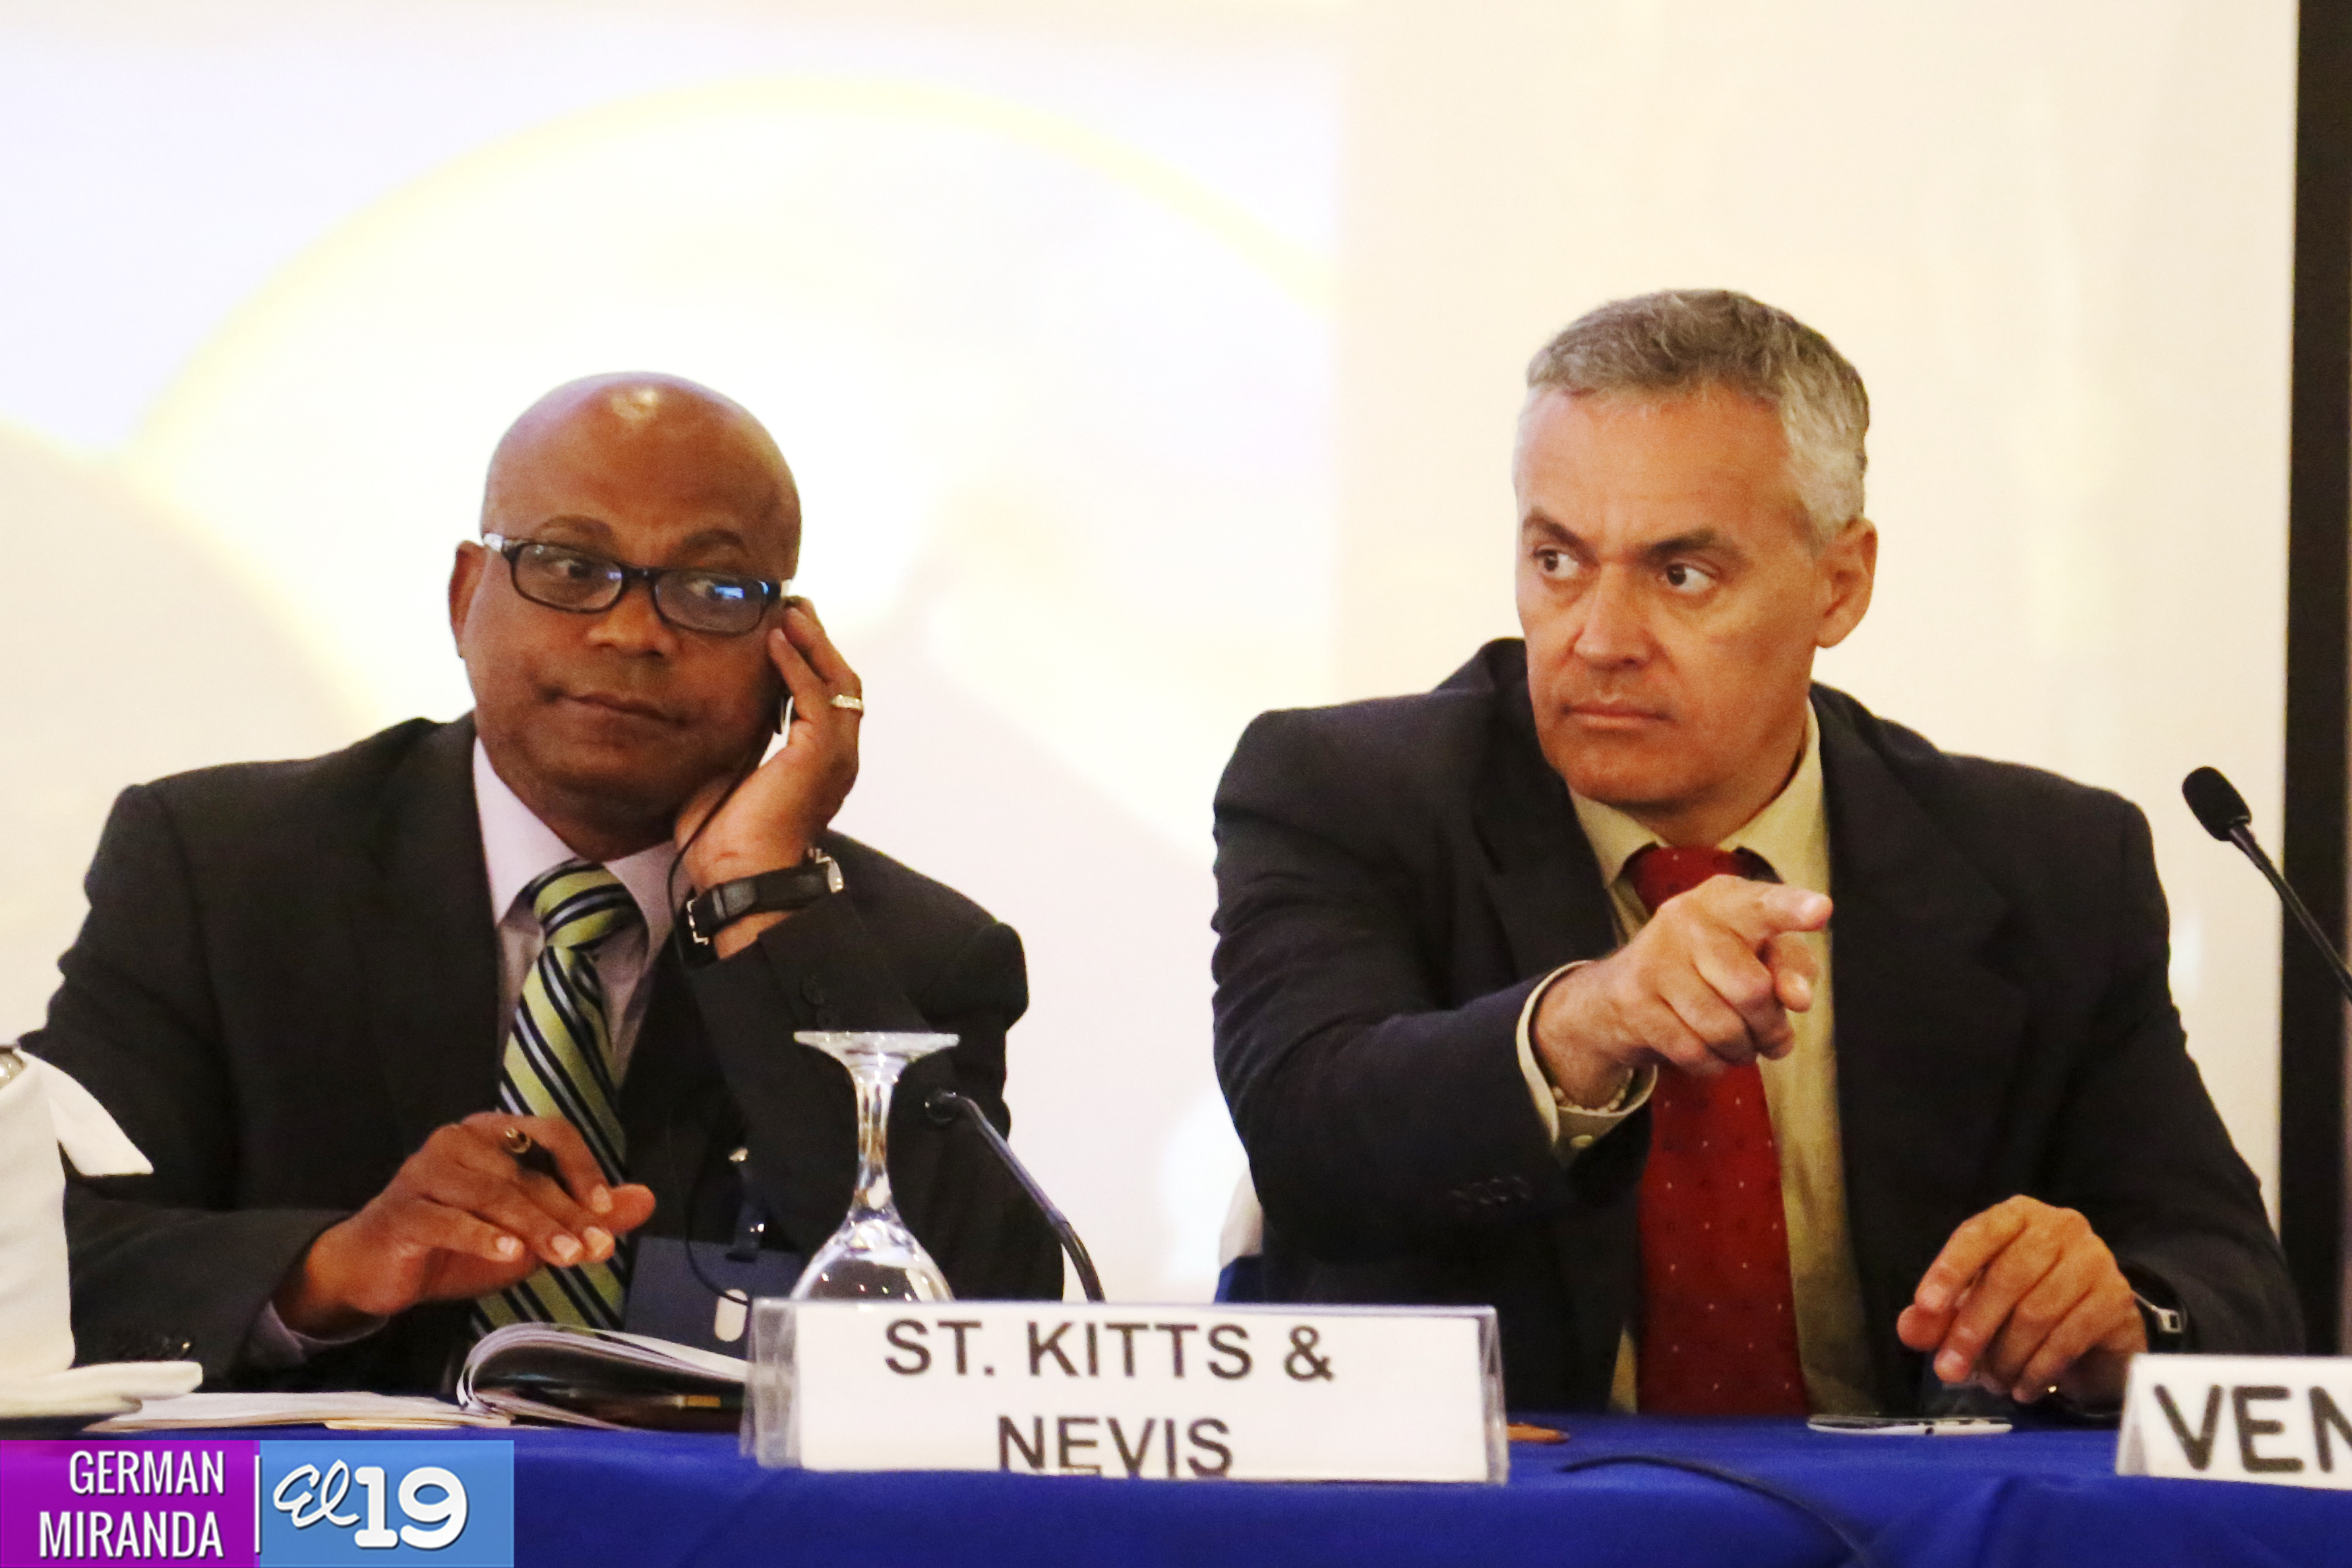 Inicia en Managua la XXVII Reunión del Comité Especial de Turismo Sostenible de la Asociación de Estados del Caribe